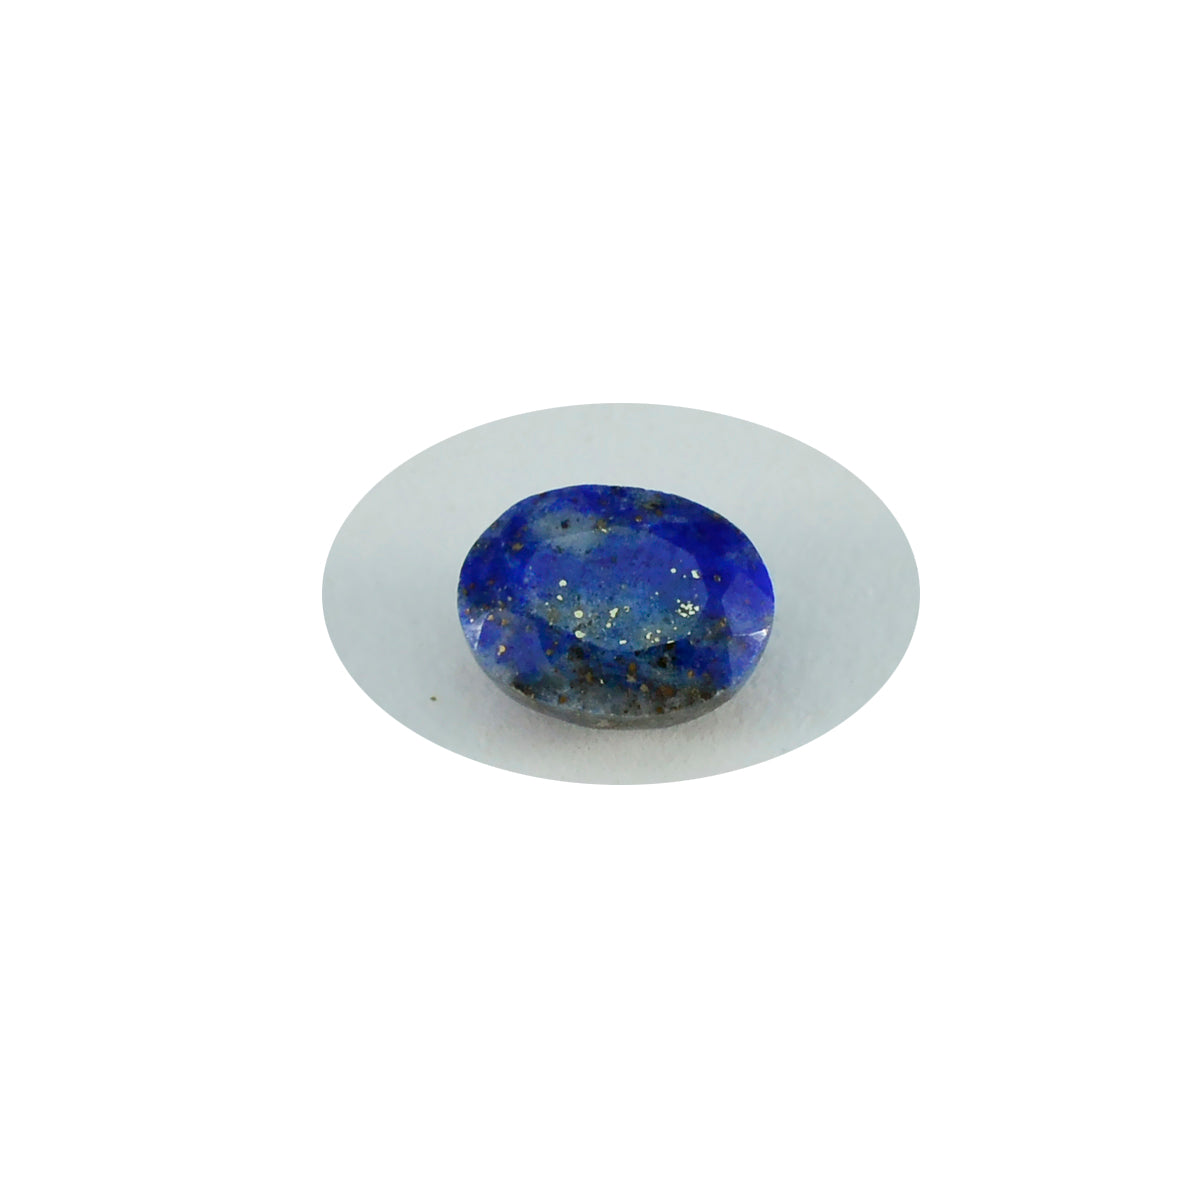 Riyogems 1 pièce de lapis-lazuli bleu véritable à facettes 3x5mm forme ovale qualité attrayante pierre précieuse en vrac